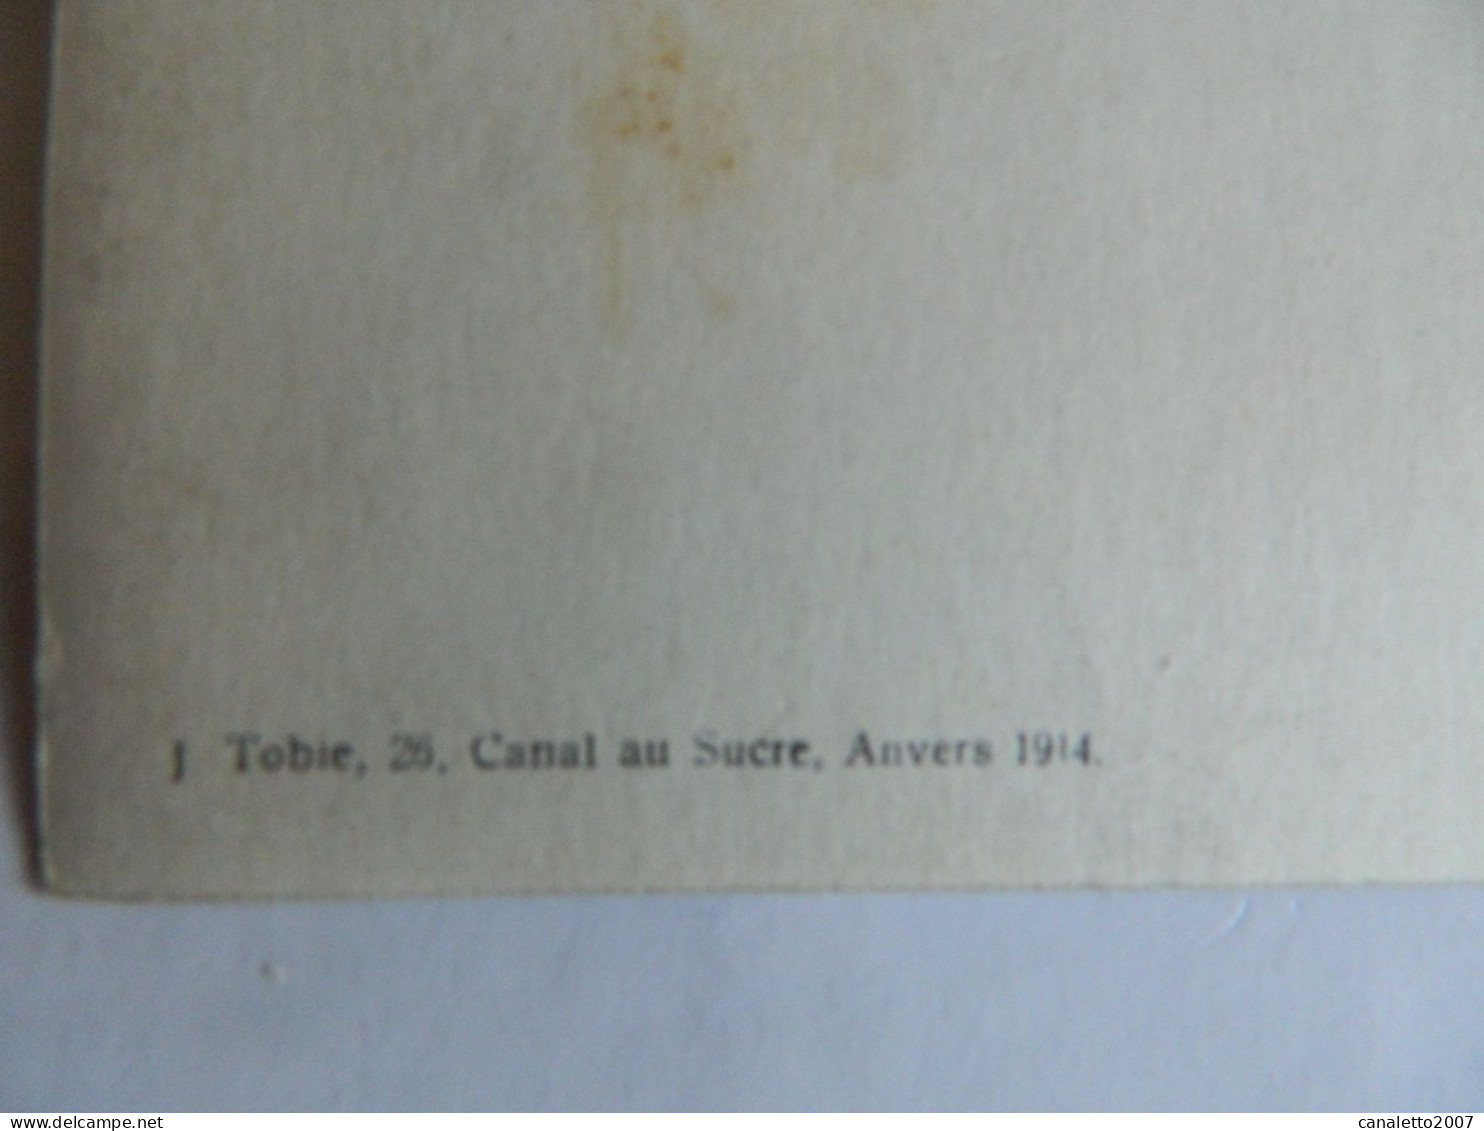 MILITARIA+ANVERS:PHOTO CARTE DE MILITAIRE EN 1913 FAIT PAR J.TOBIE 26 CANAL AU SUCRE ANVERS - Personaggi